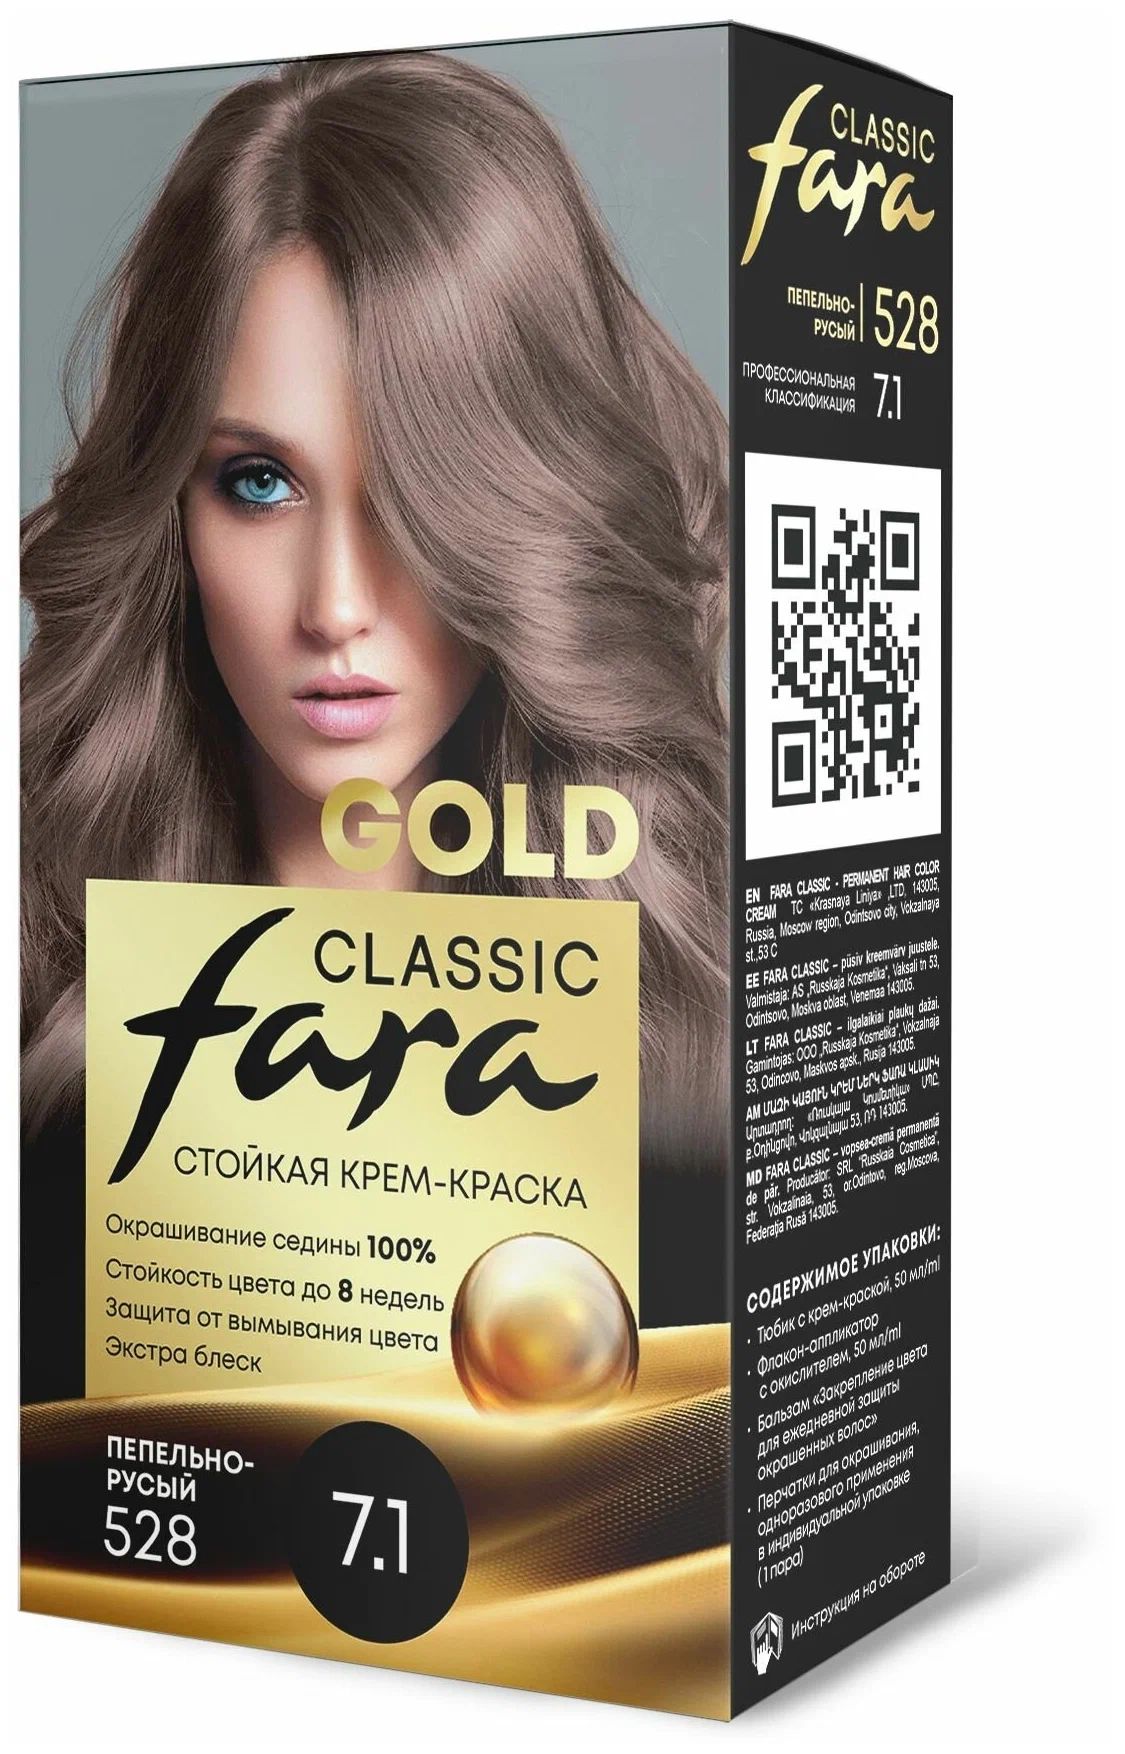 Крем-краска для волос Fara Classic Gold 528 пепельно-русый 7.1, 140 г